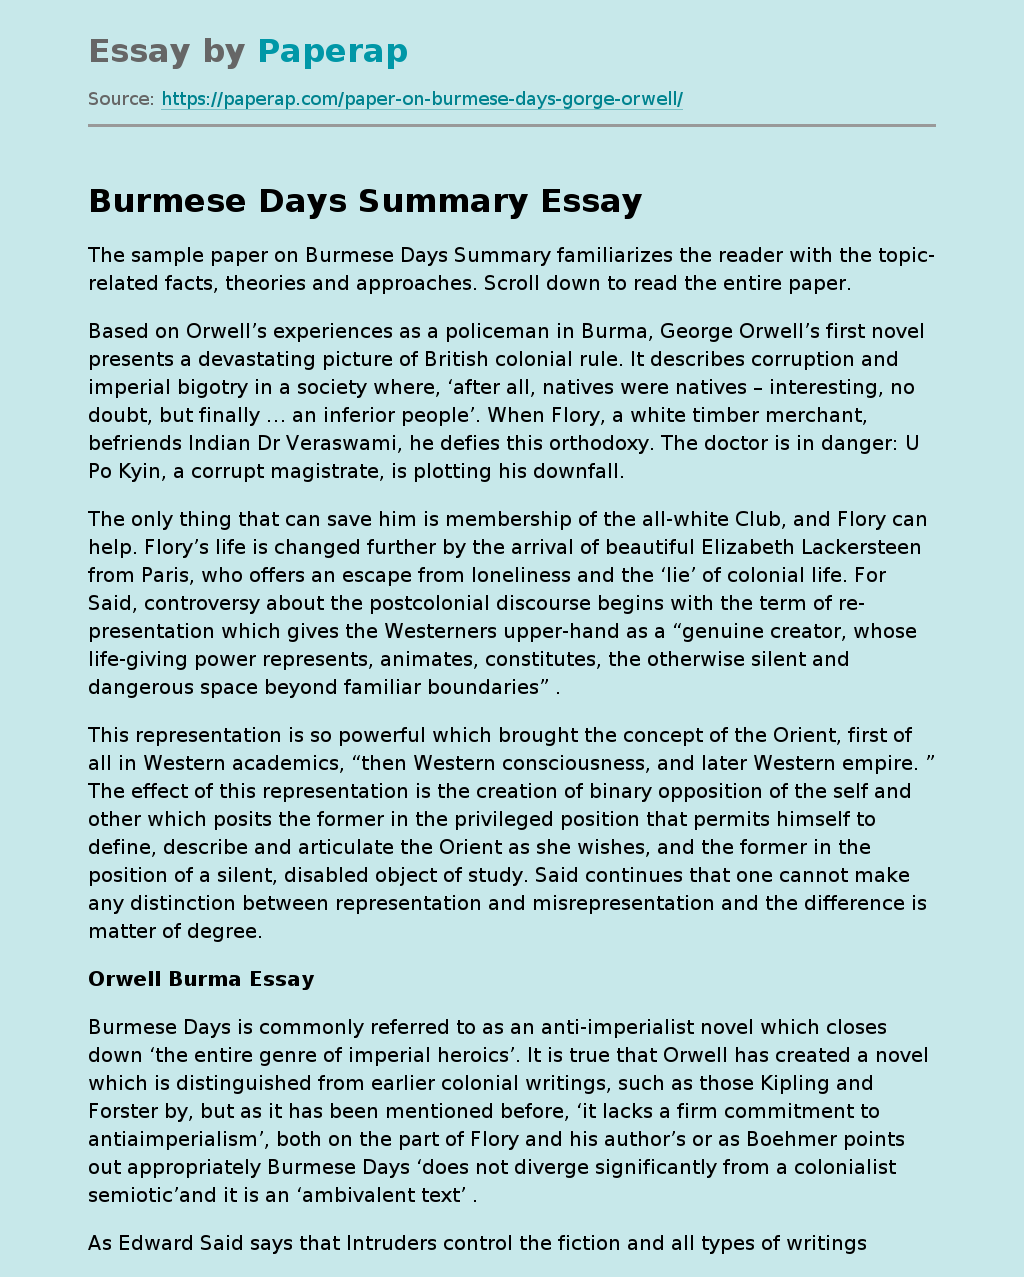 Burmese Days Summary